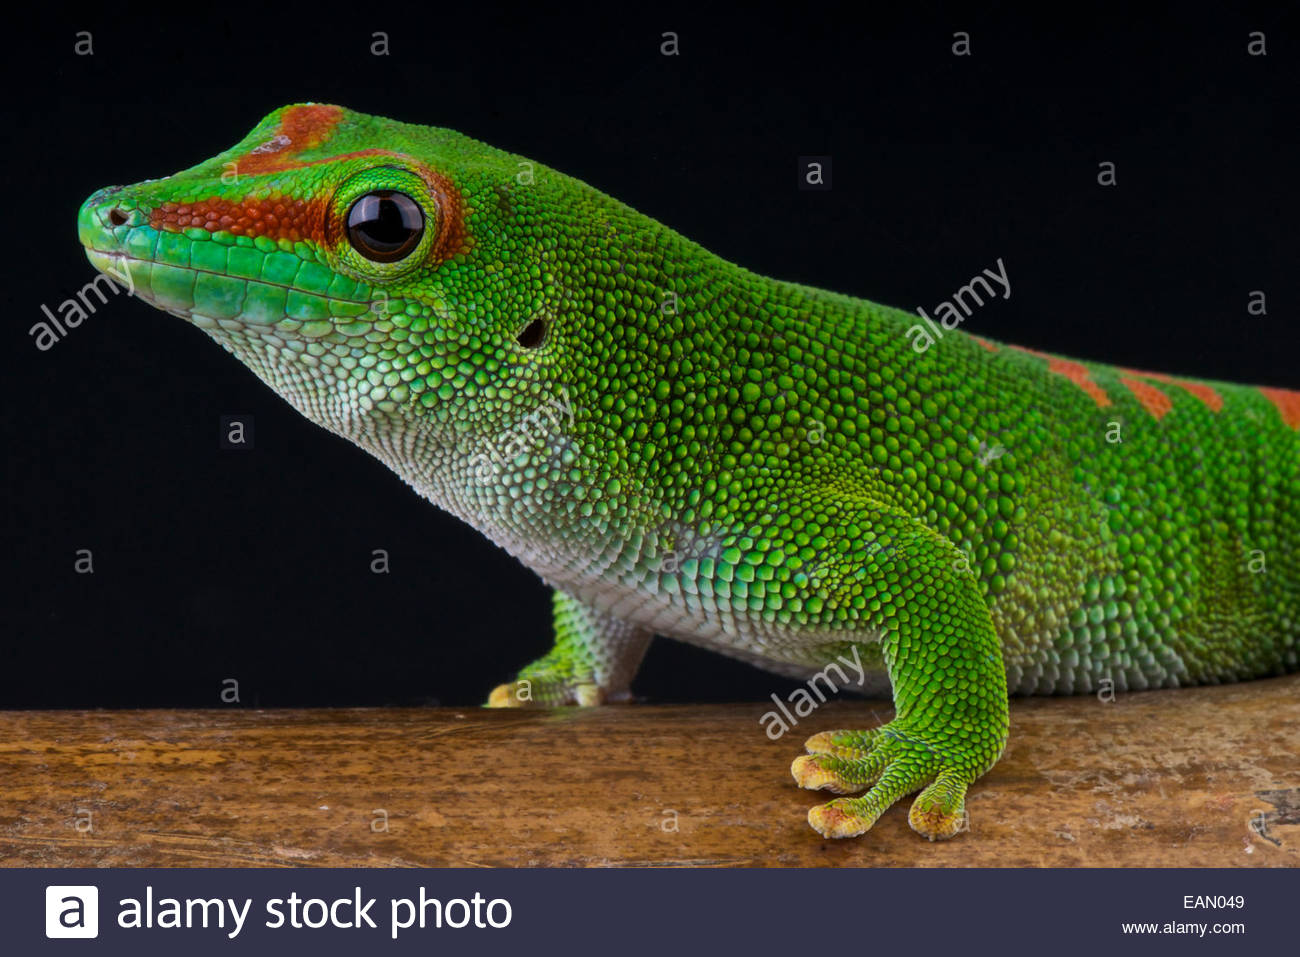 Giant day gecko Phelsuma madagascariensis grandis Stock Photo